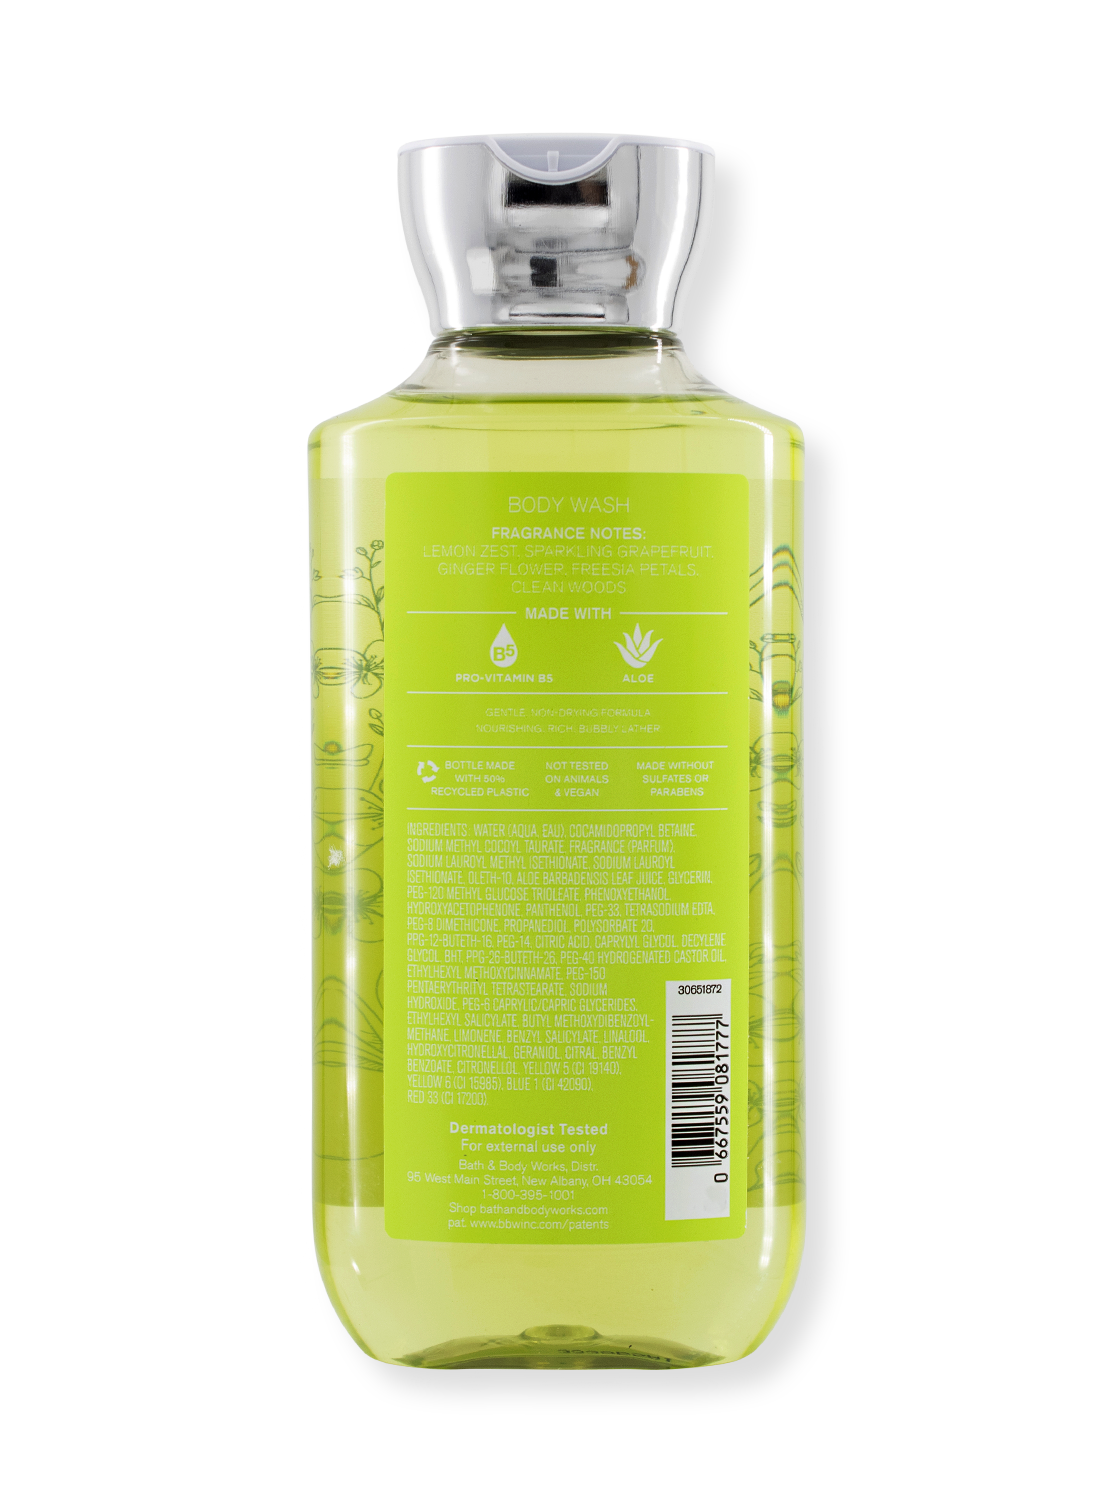 Gel de douche / lavage du corps - Citrus blanc - Nouveau design - 295 ml